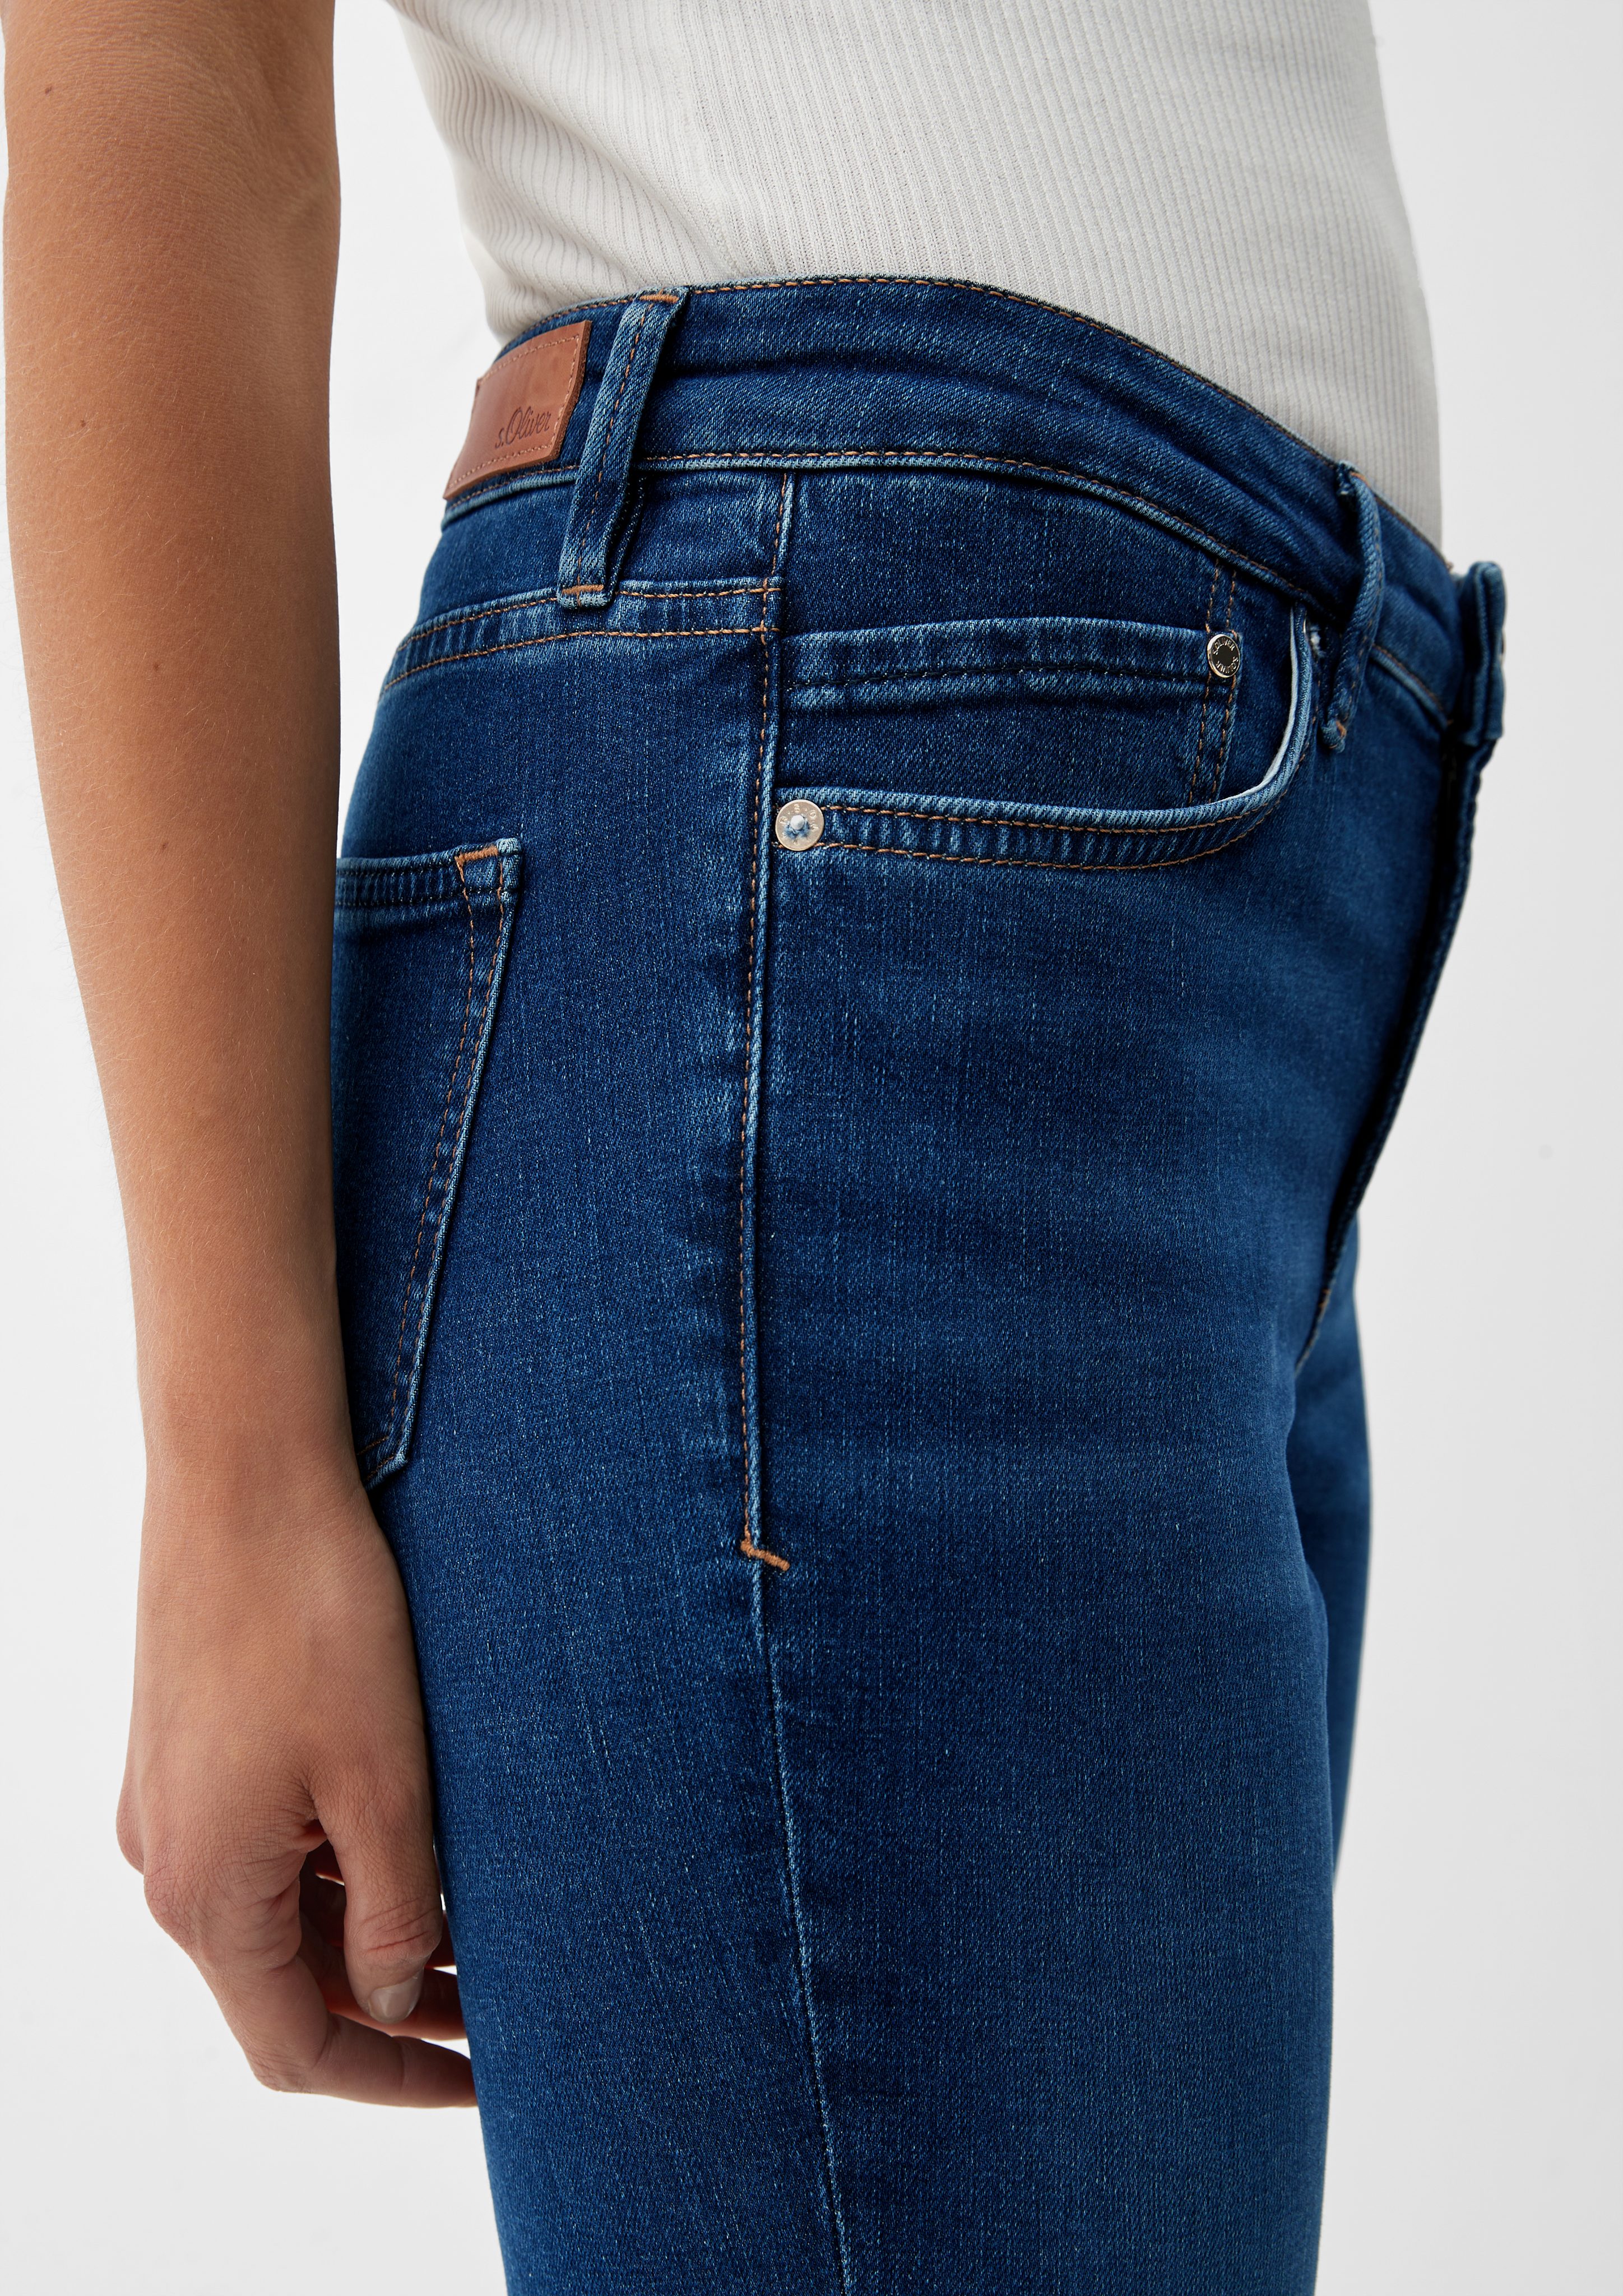 / / Mid 5-Pocket-Jeans / Rise Fit Bootcut Leg Slim Leder-Patch s.Oliver Beverly Jeans